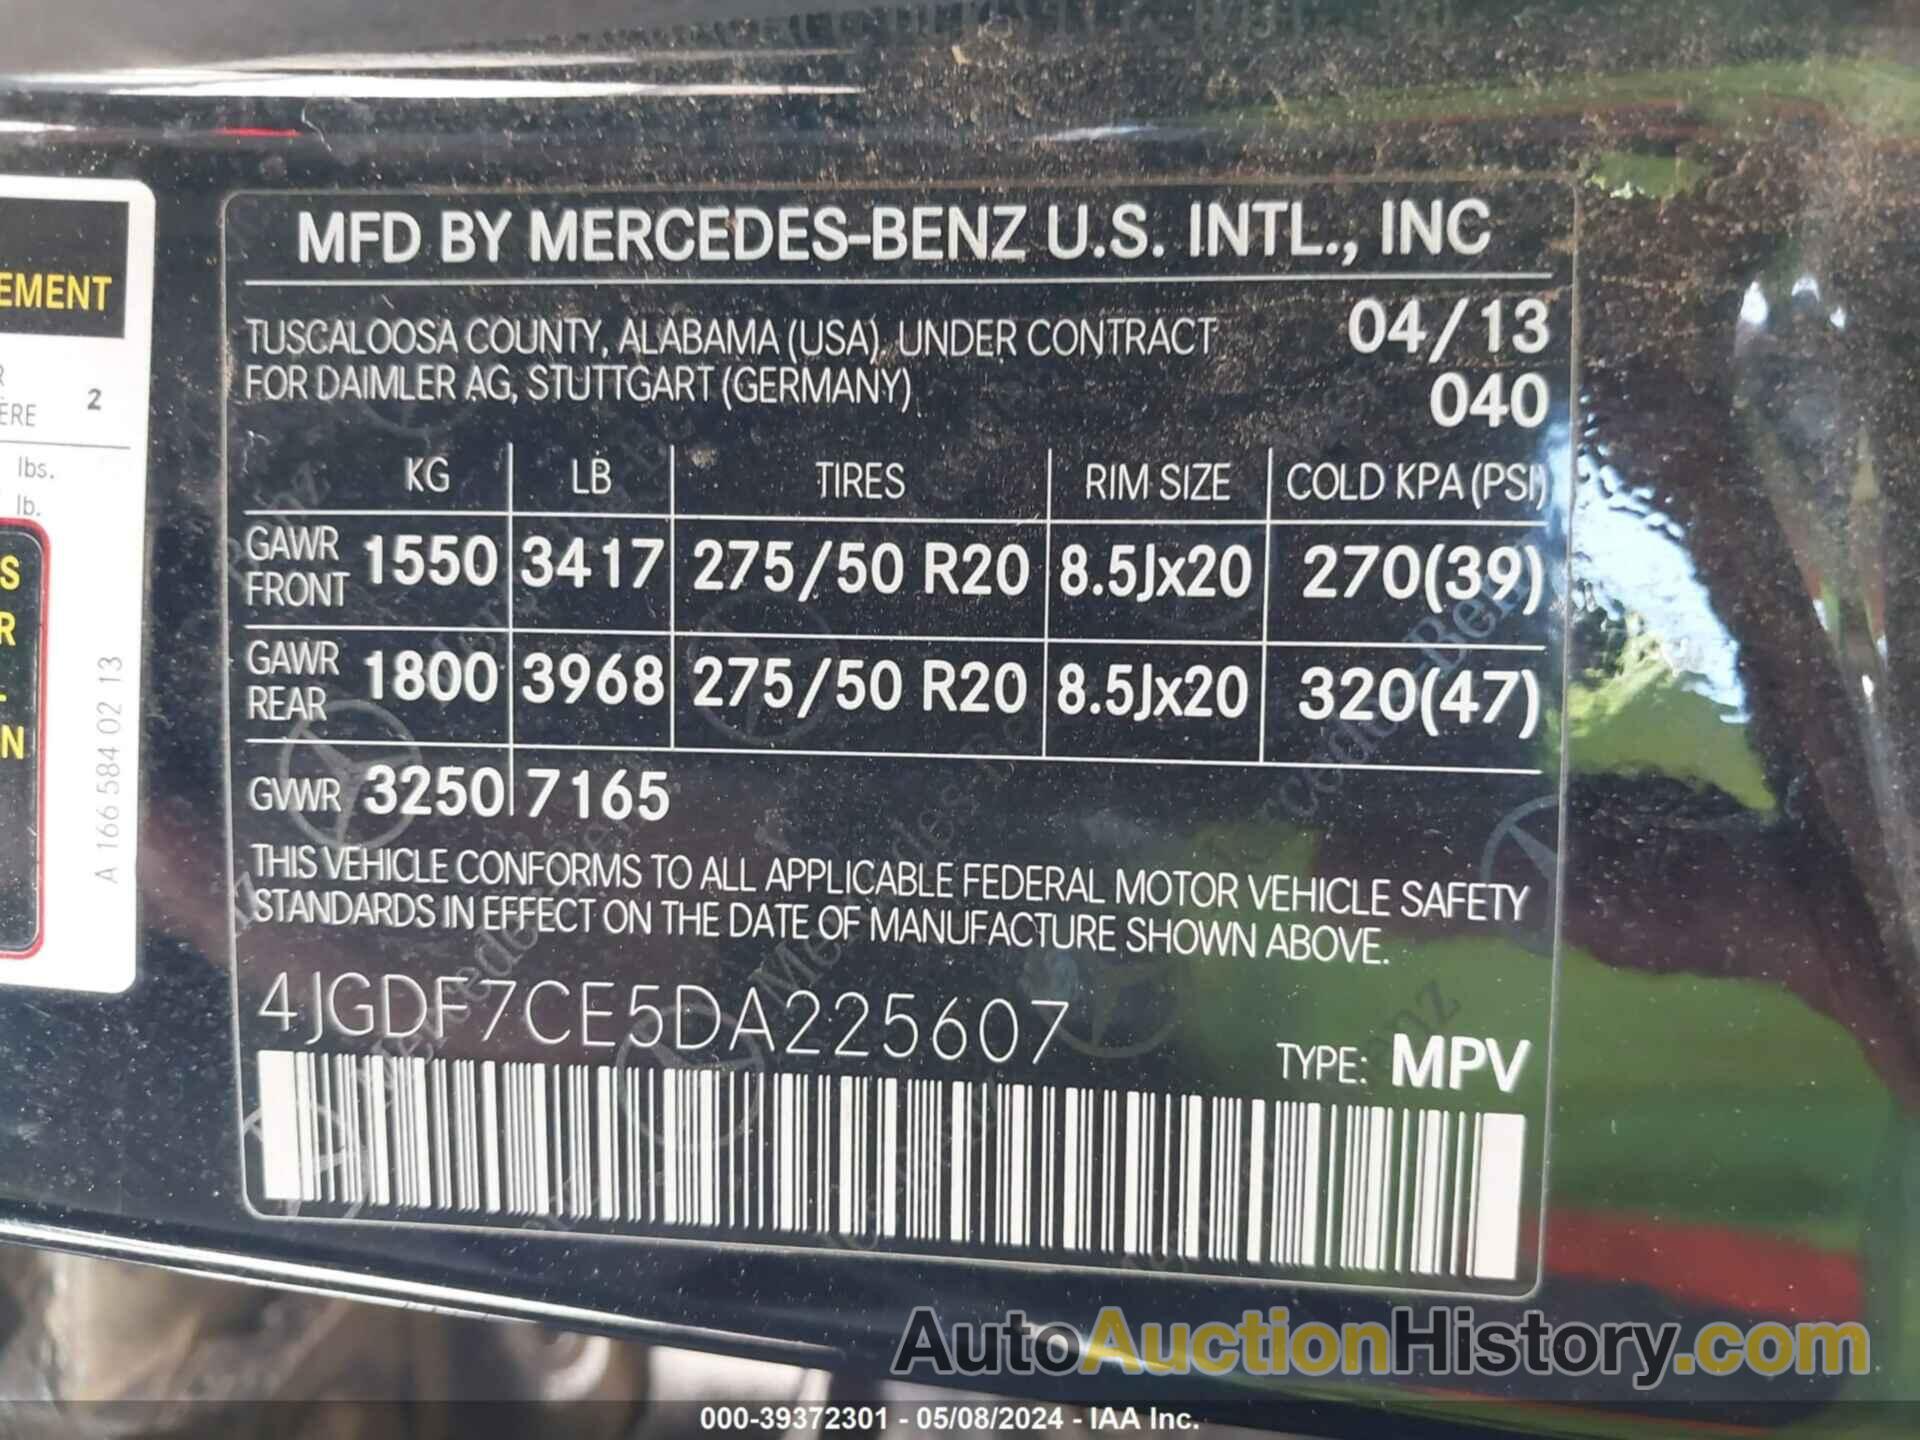 MERCEDES-BENZ GL 450 4MATIC, 4JGDF7CE5DA225607